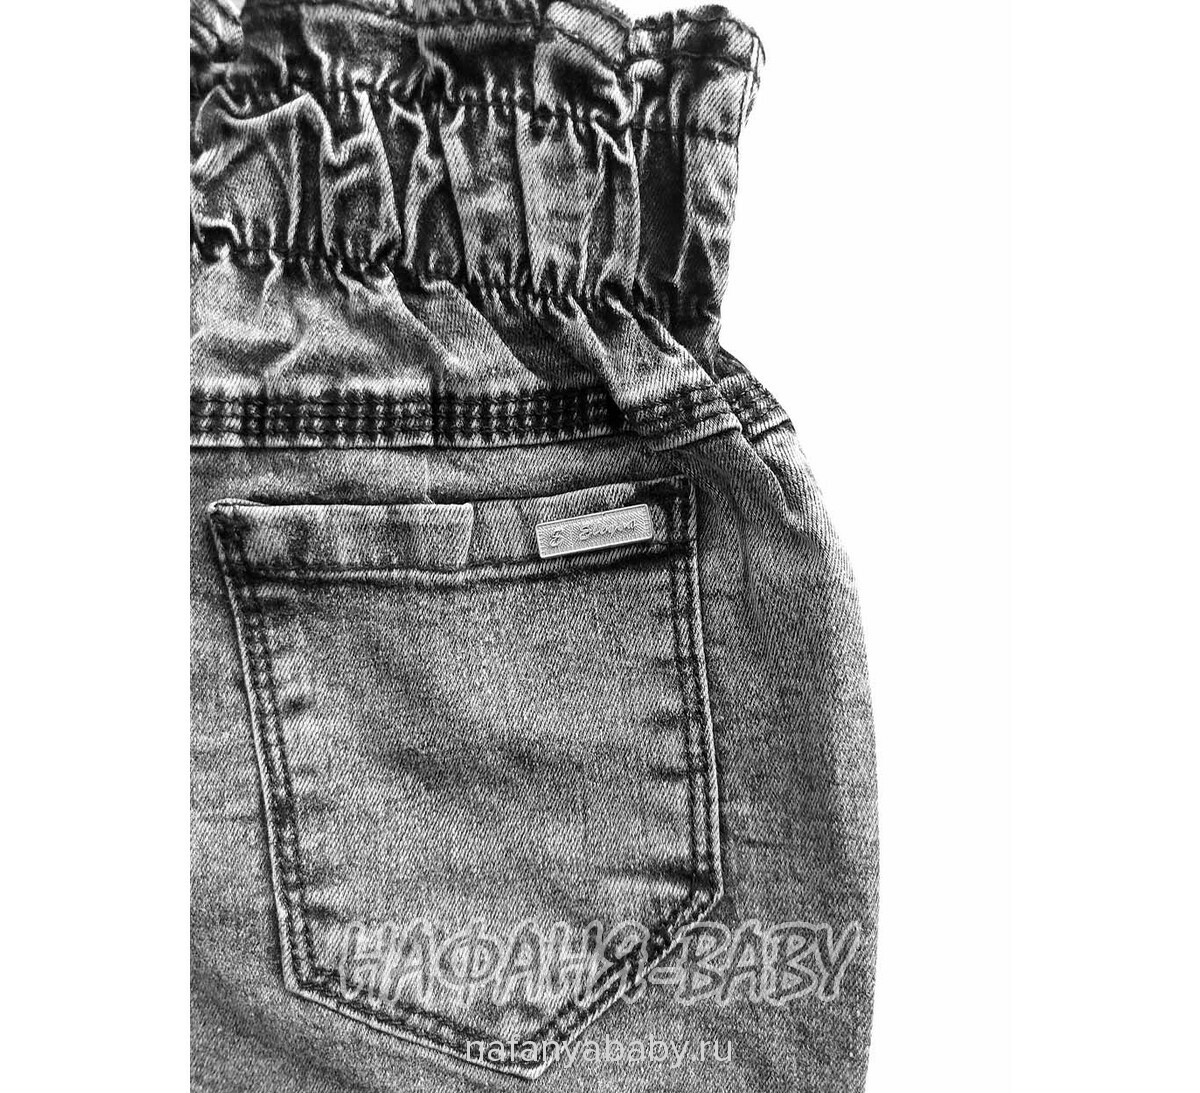 Джинсы подростковые ELEYSA Jeans арт: 61422, 13-16 лет, цвет черный, оптом Турция